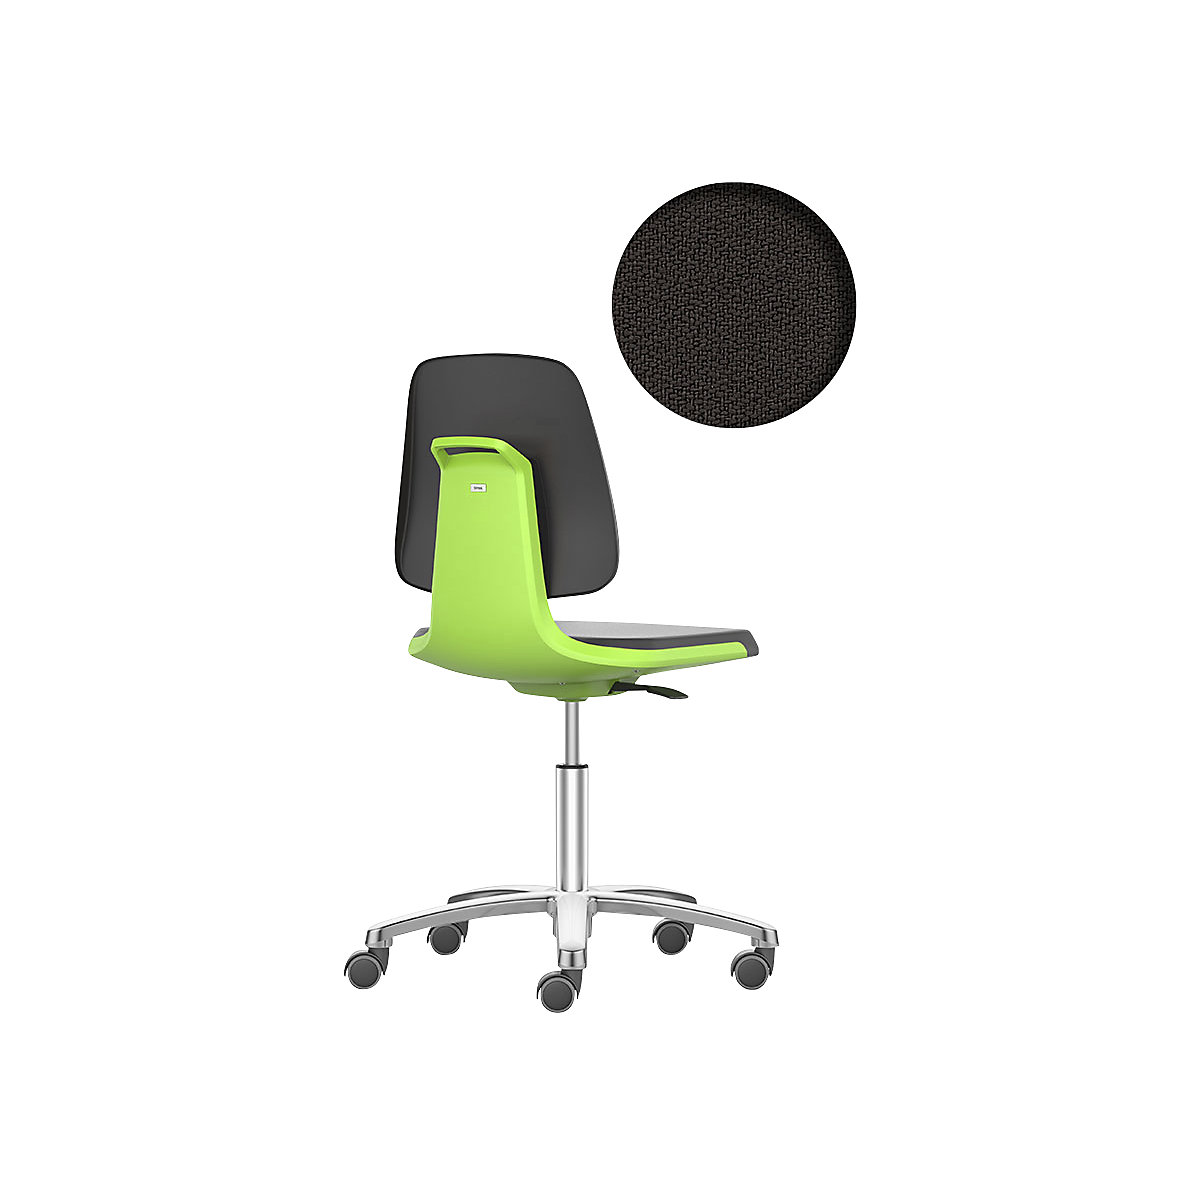 Pracovná otočná stolička LABSIT – bimos, päť nôh s kolieskami, sedadlo s látkovým poťahom, zelená-30